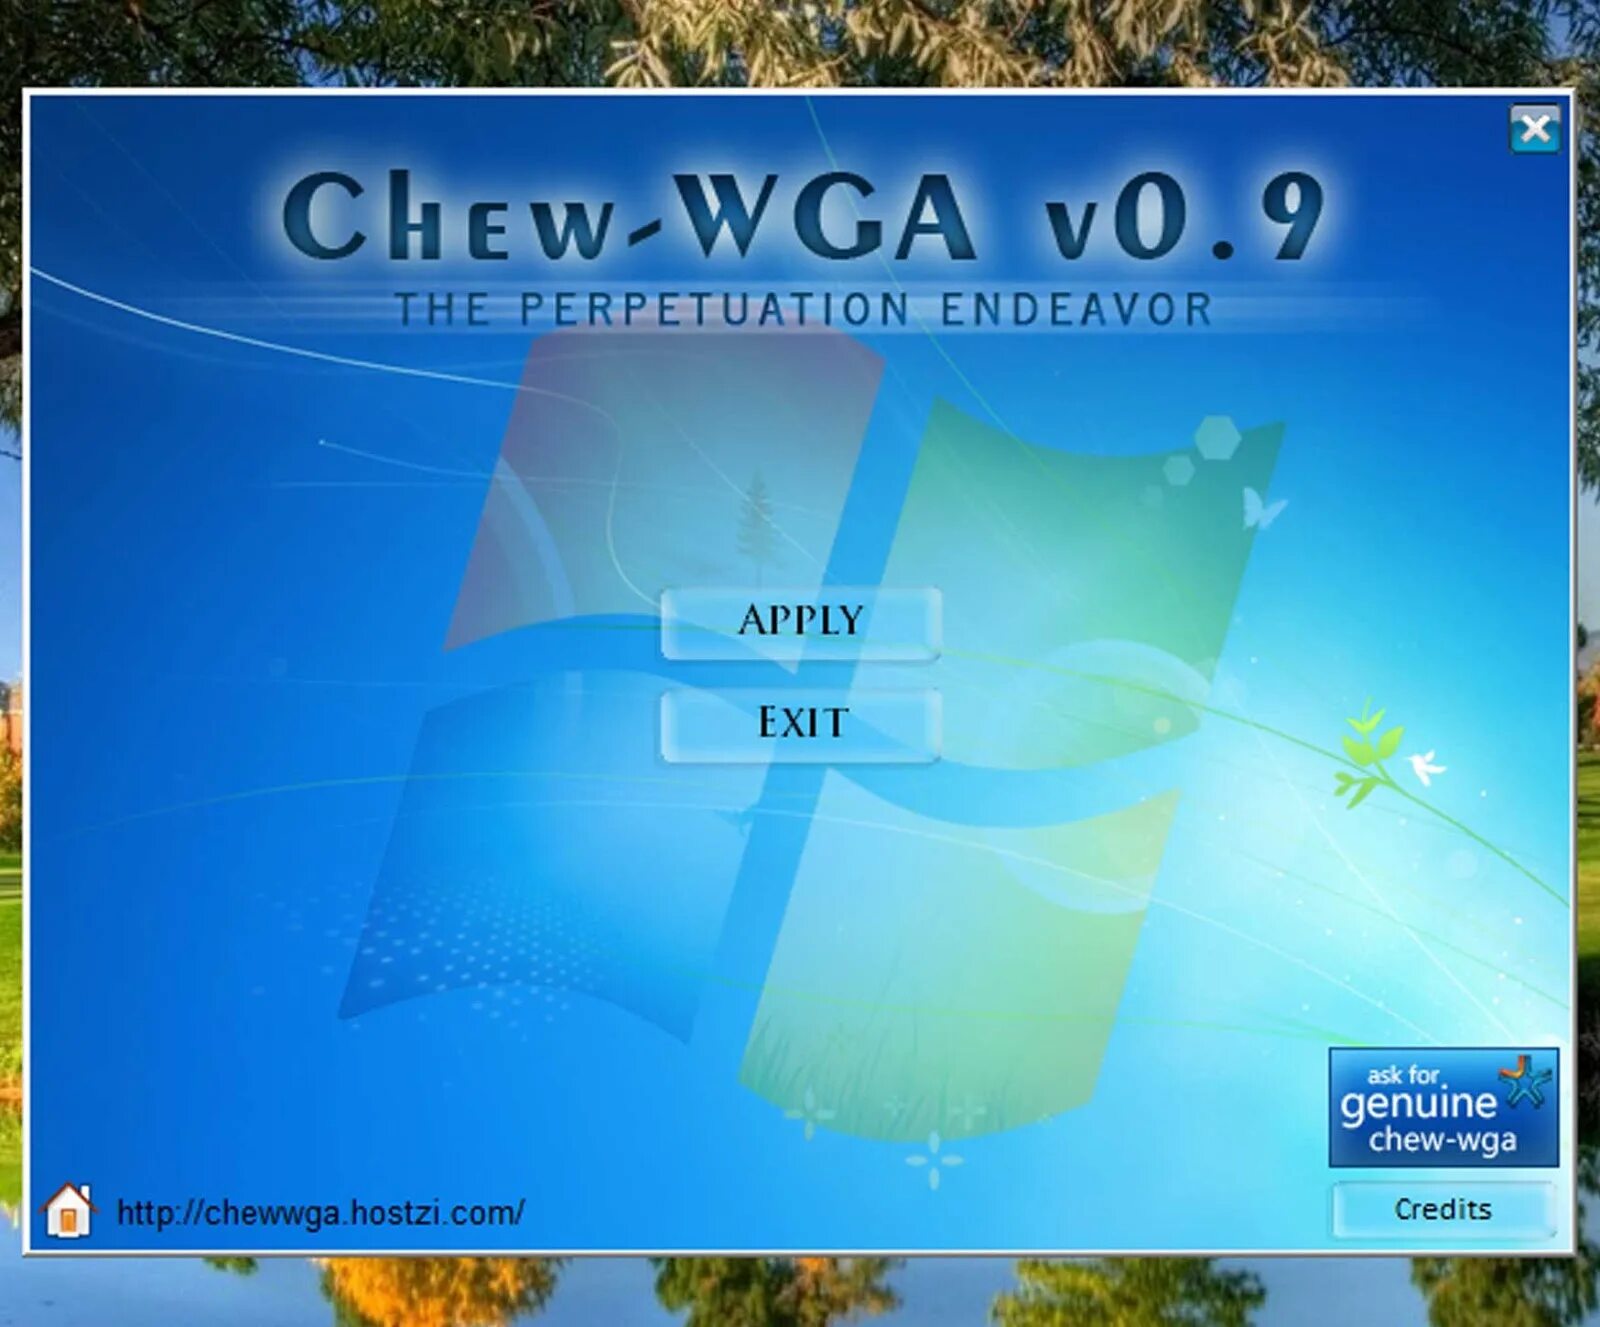 Cw 7 активатор. Активатор Windows 7. Активатор Chew WGA. Windows 7 Activator. Активация Windows 7 Chew-WGA.